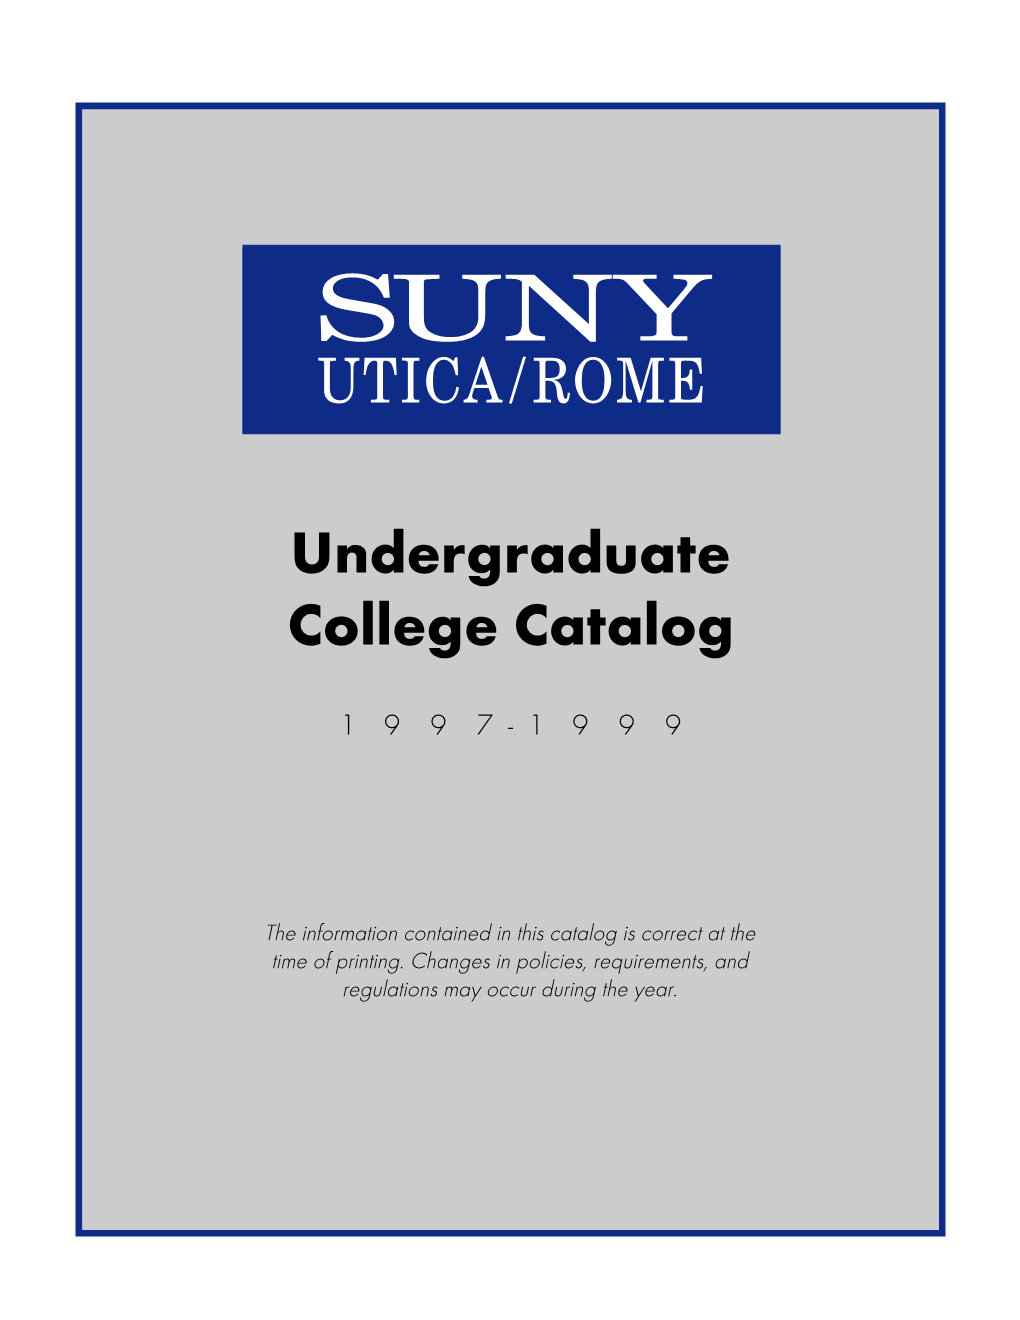 Undergraduate-Catalog1997-1999.Pdf